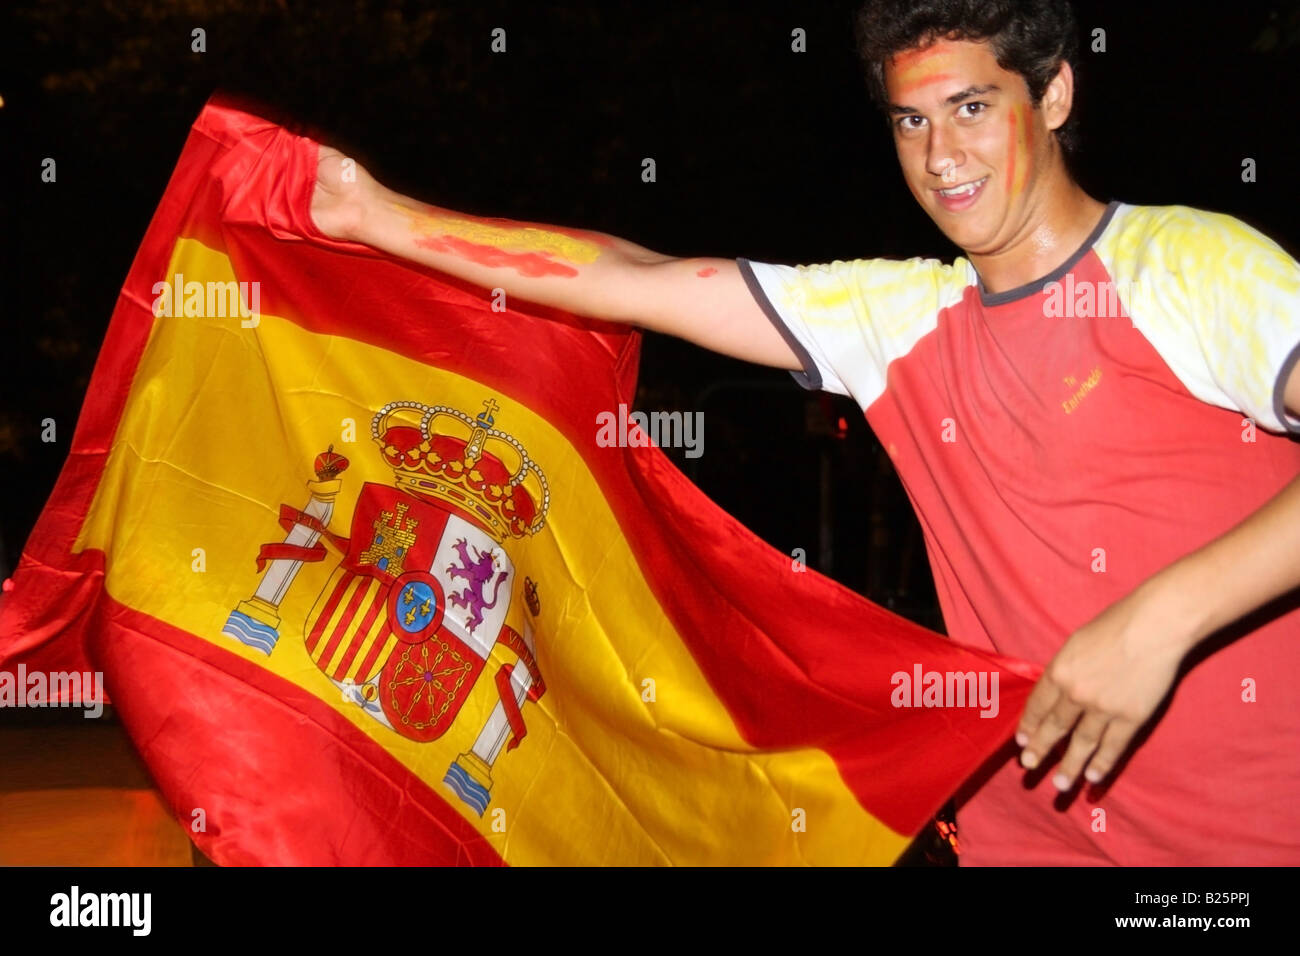 Man celebrating Espagne équipe de football victoire sur l'Allemagne dans l'UEFA EURO 2008 qui agitait un drapeau espagnol comme s'il était un toréador Banque D'Images